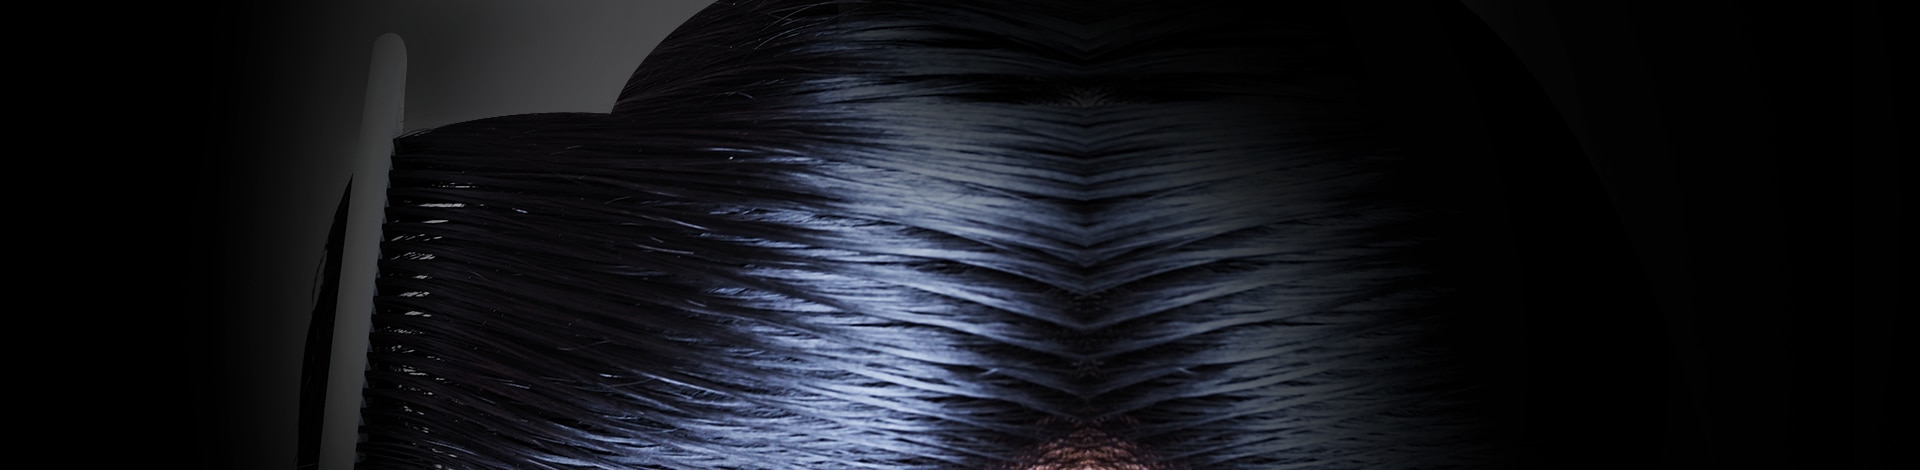 Closeup of sleek black hair being combed